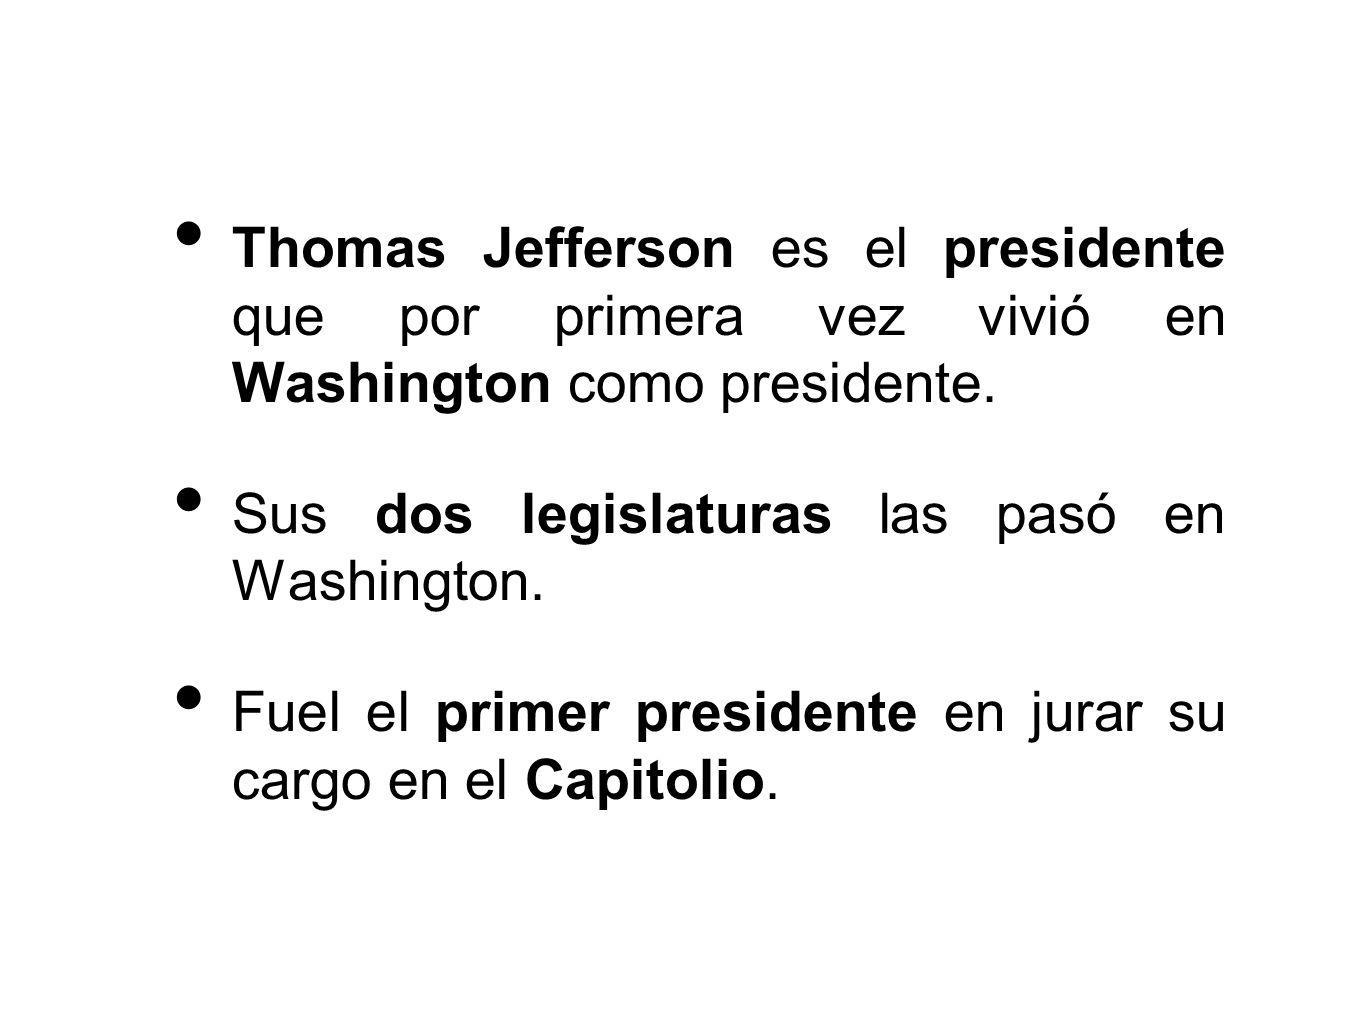 Thomas Jefferson es el presidente que por primera vez vivió en Washington como presidente.